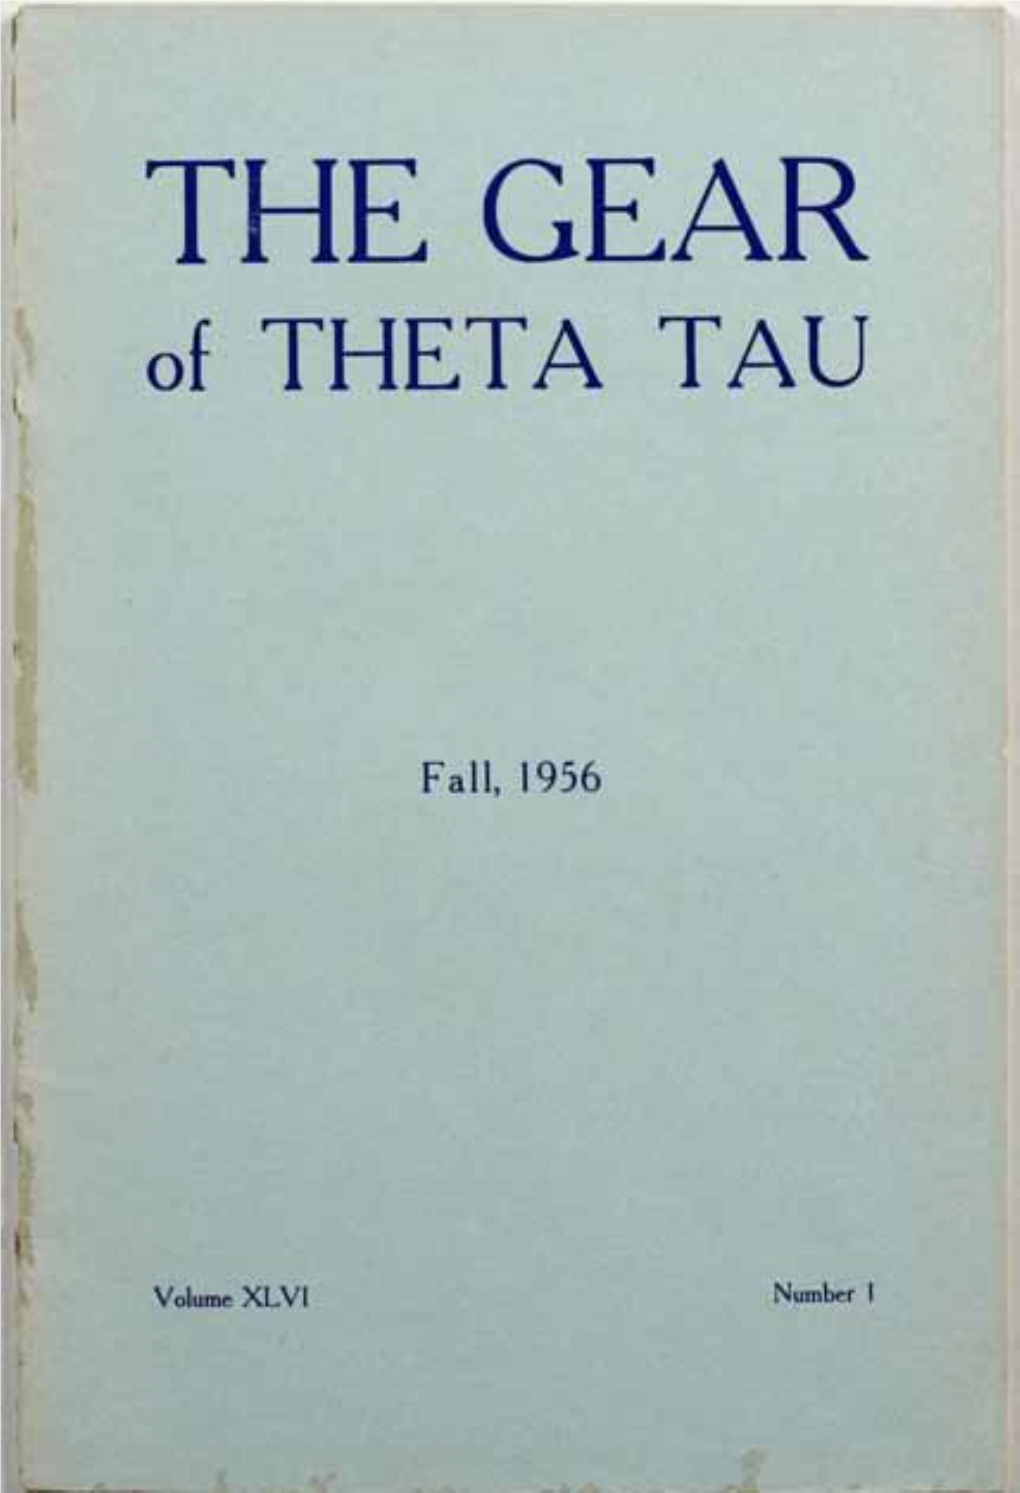 THE GEAR of THETA TAU